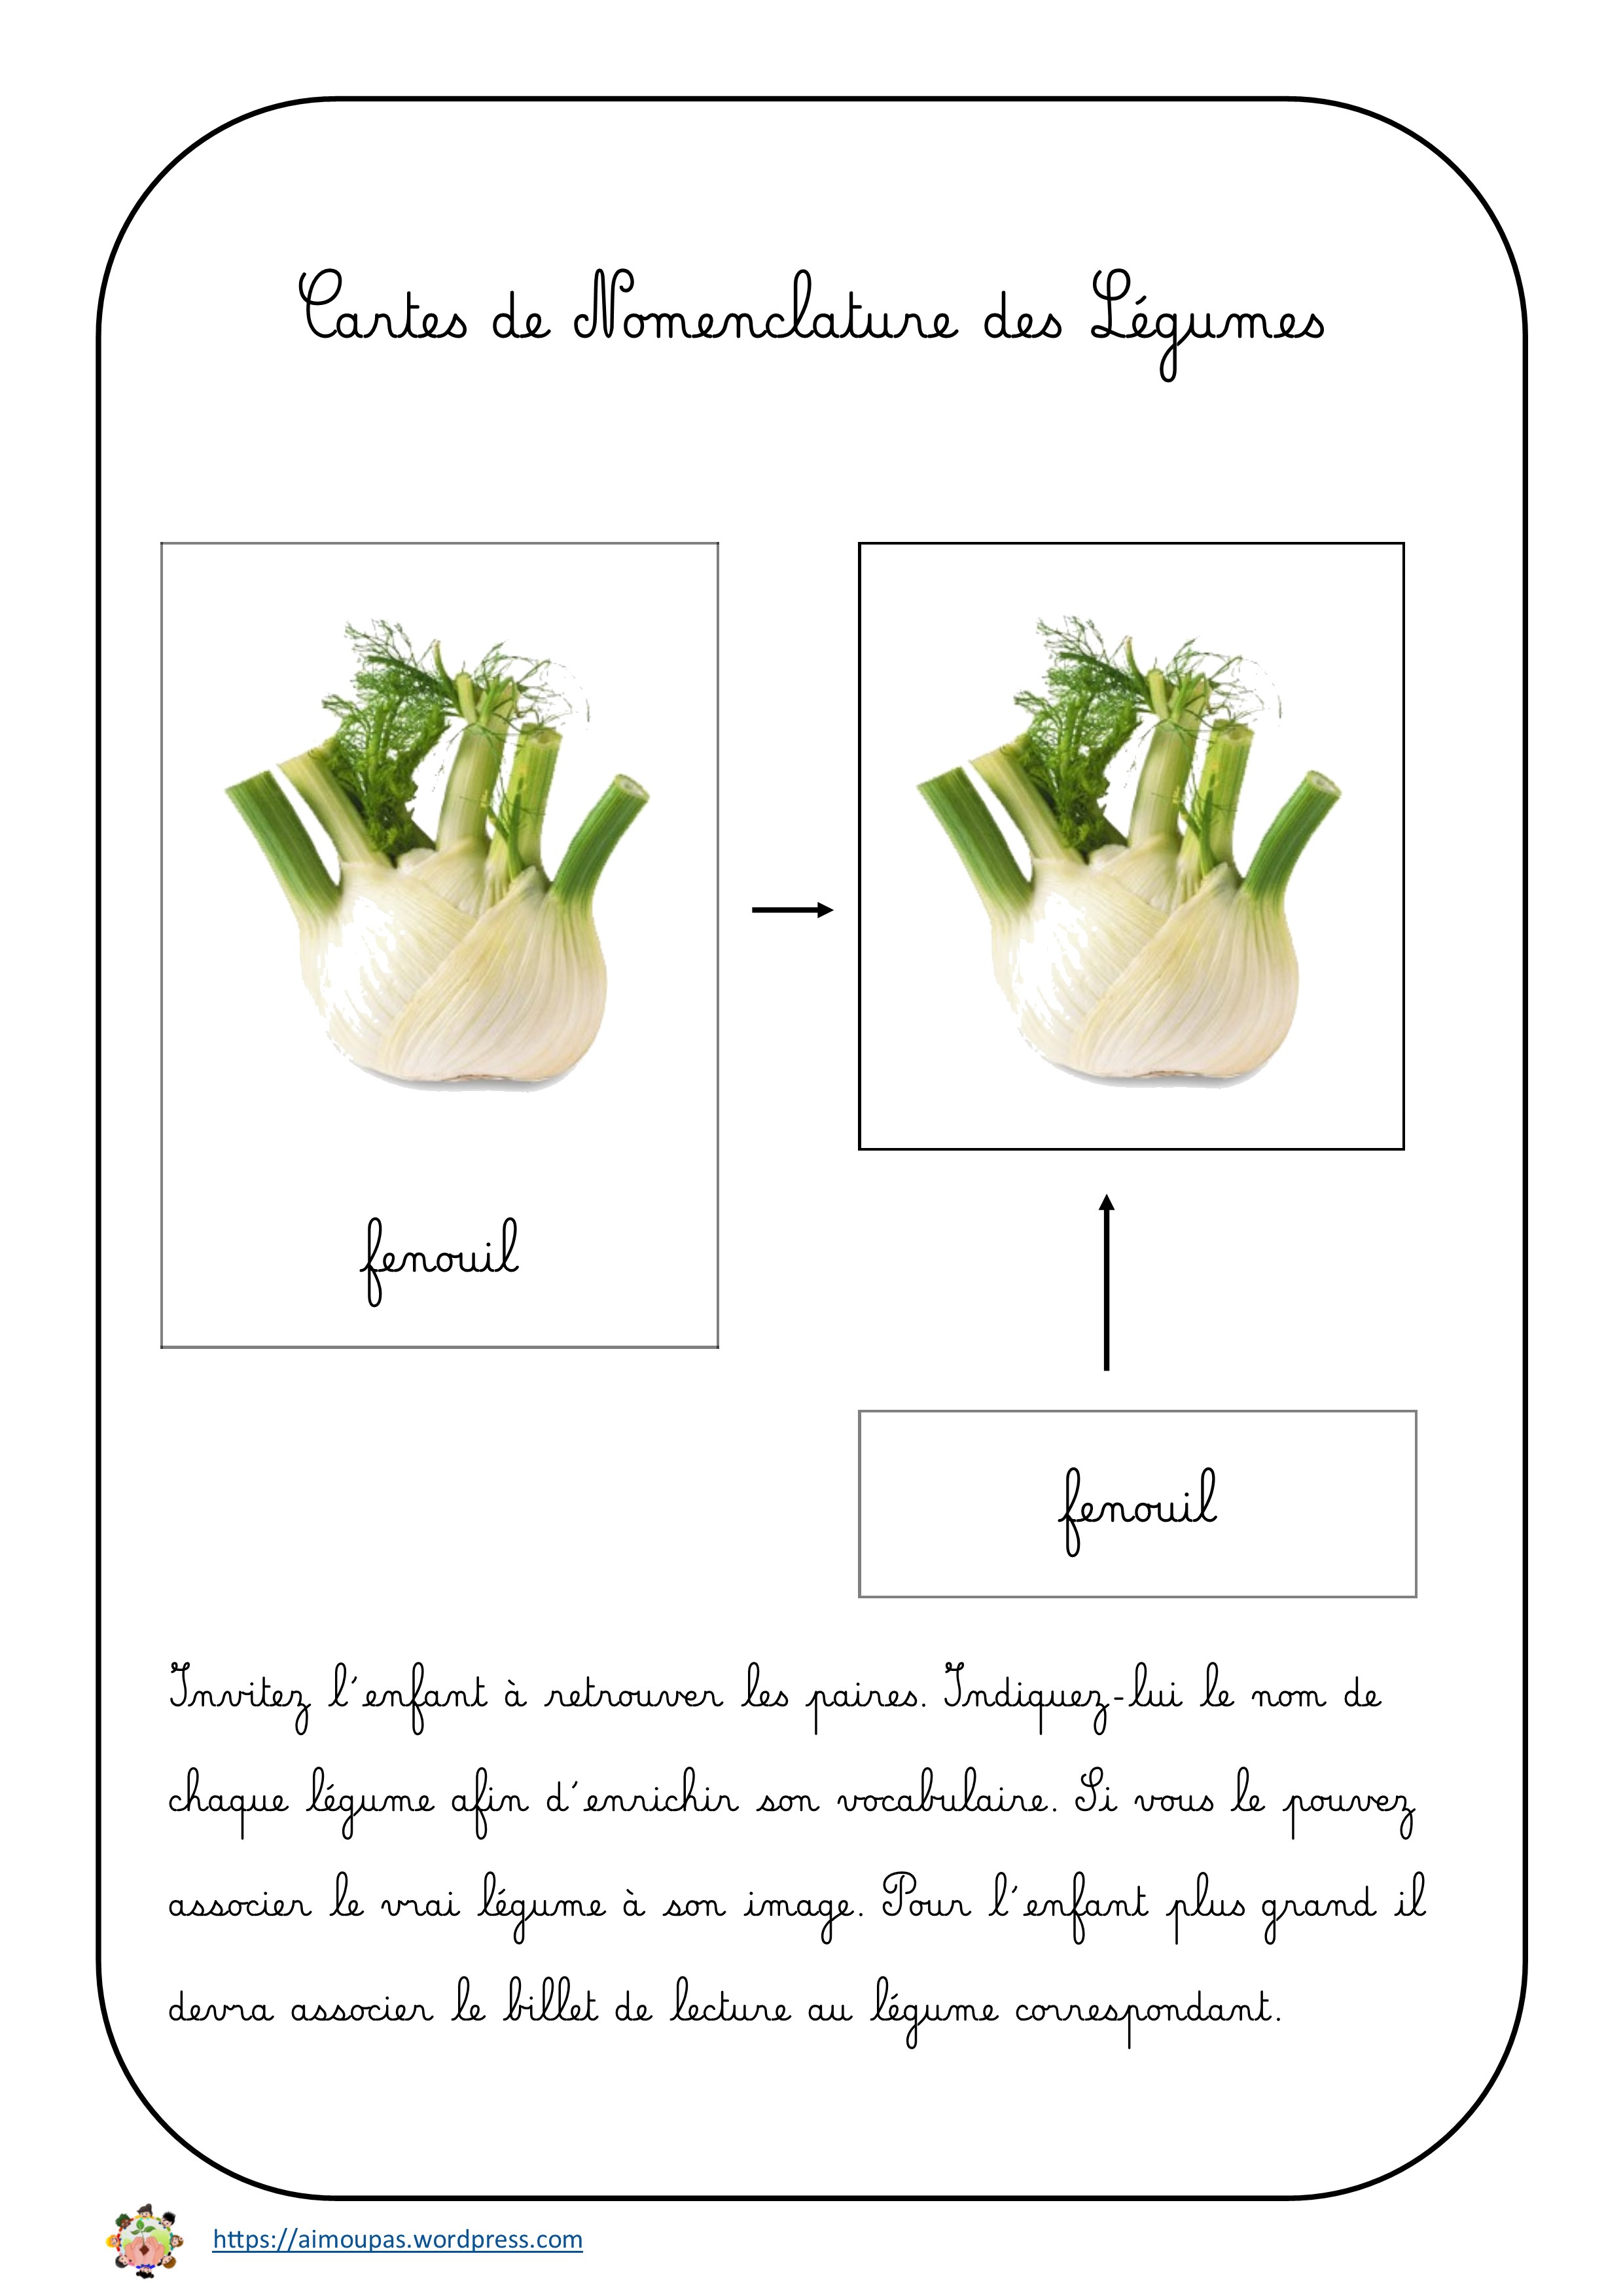 [Folder] Cartes de nomenclature des Légumes